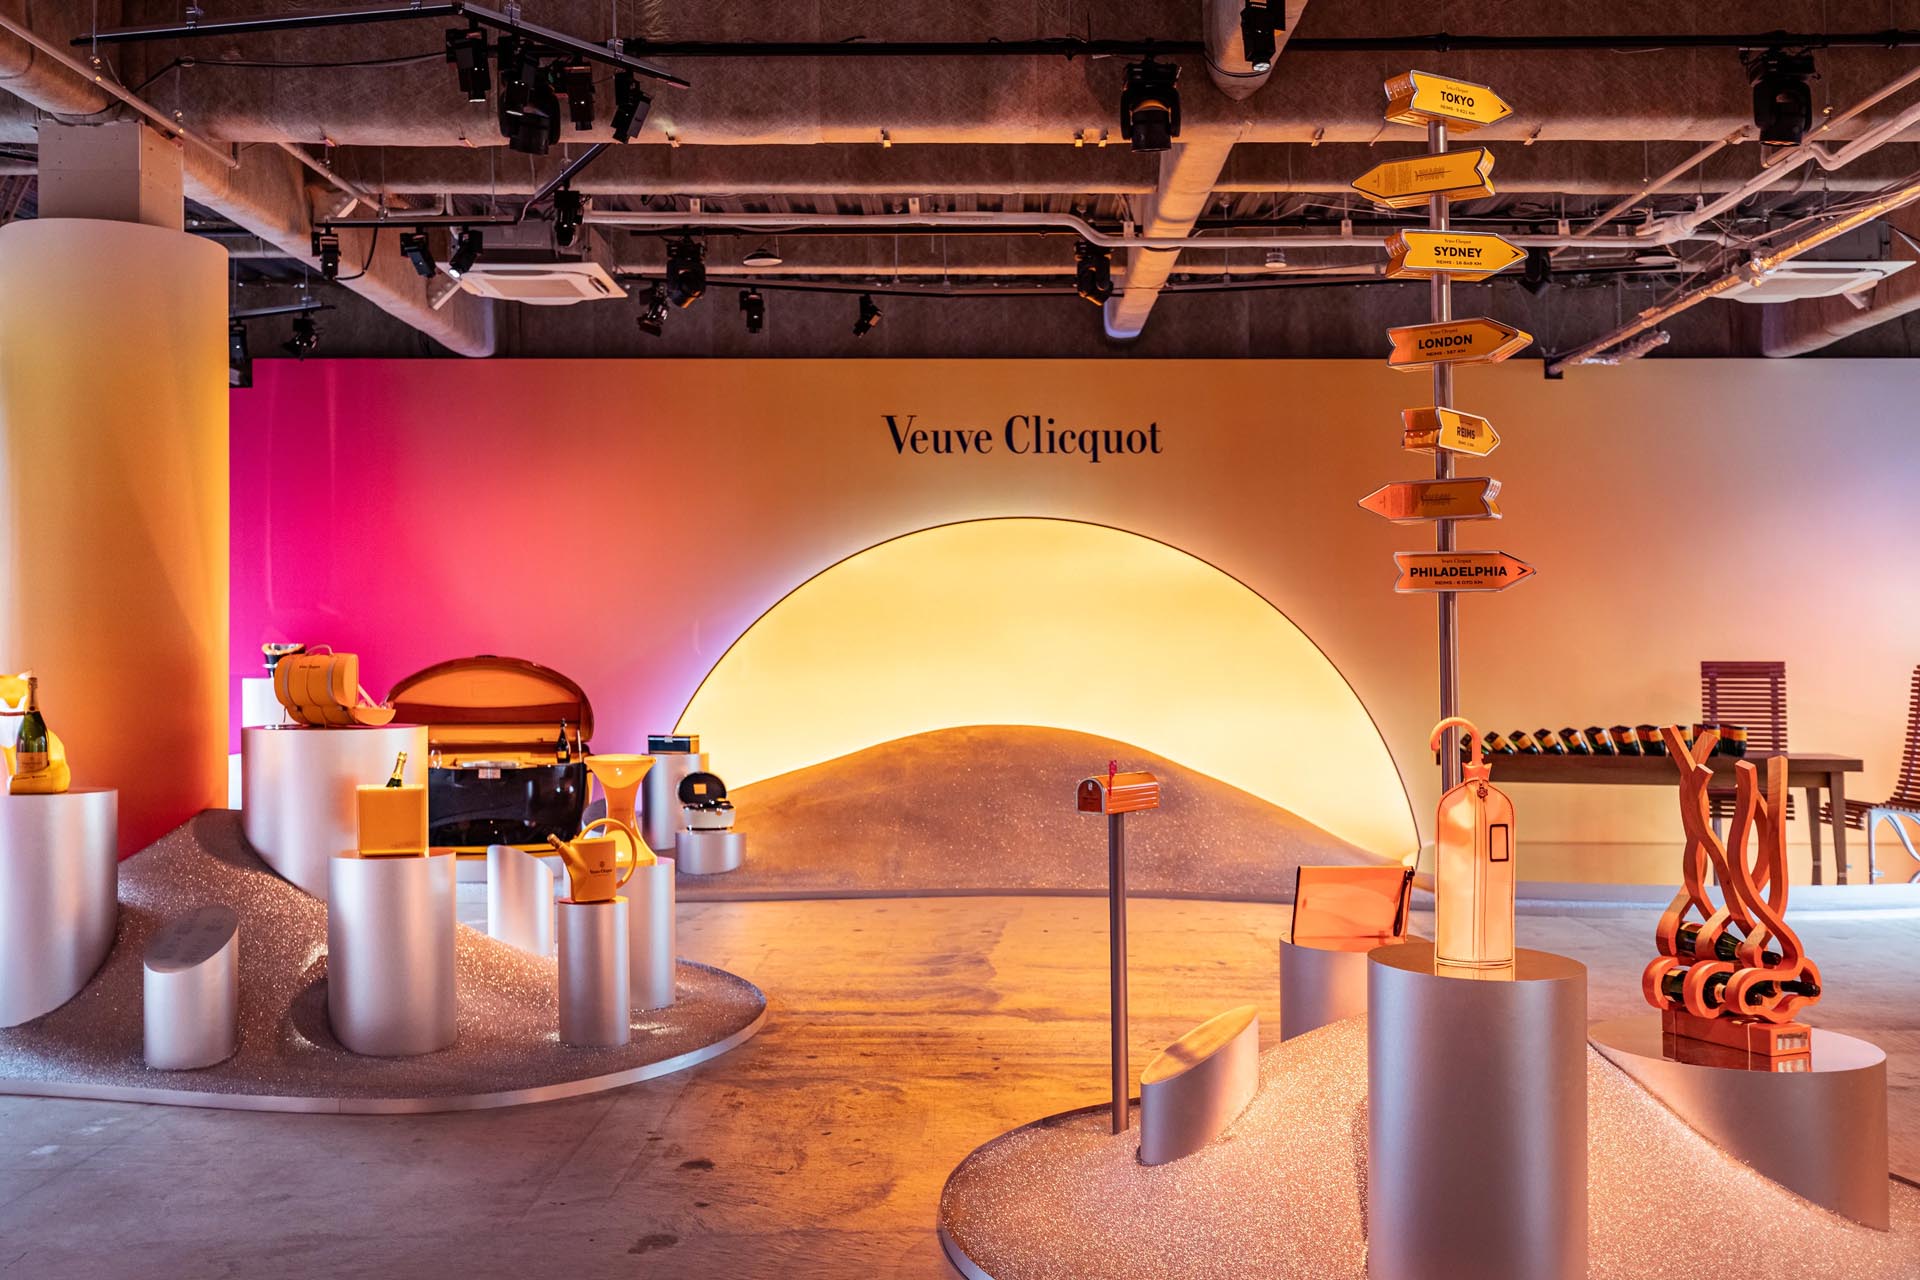 Veuve Clicquot 250th anniversary exhibition